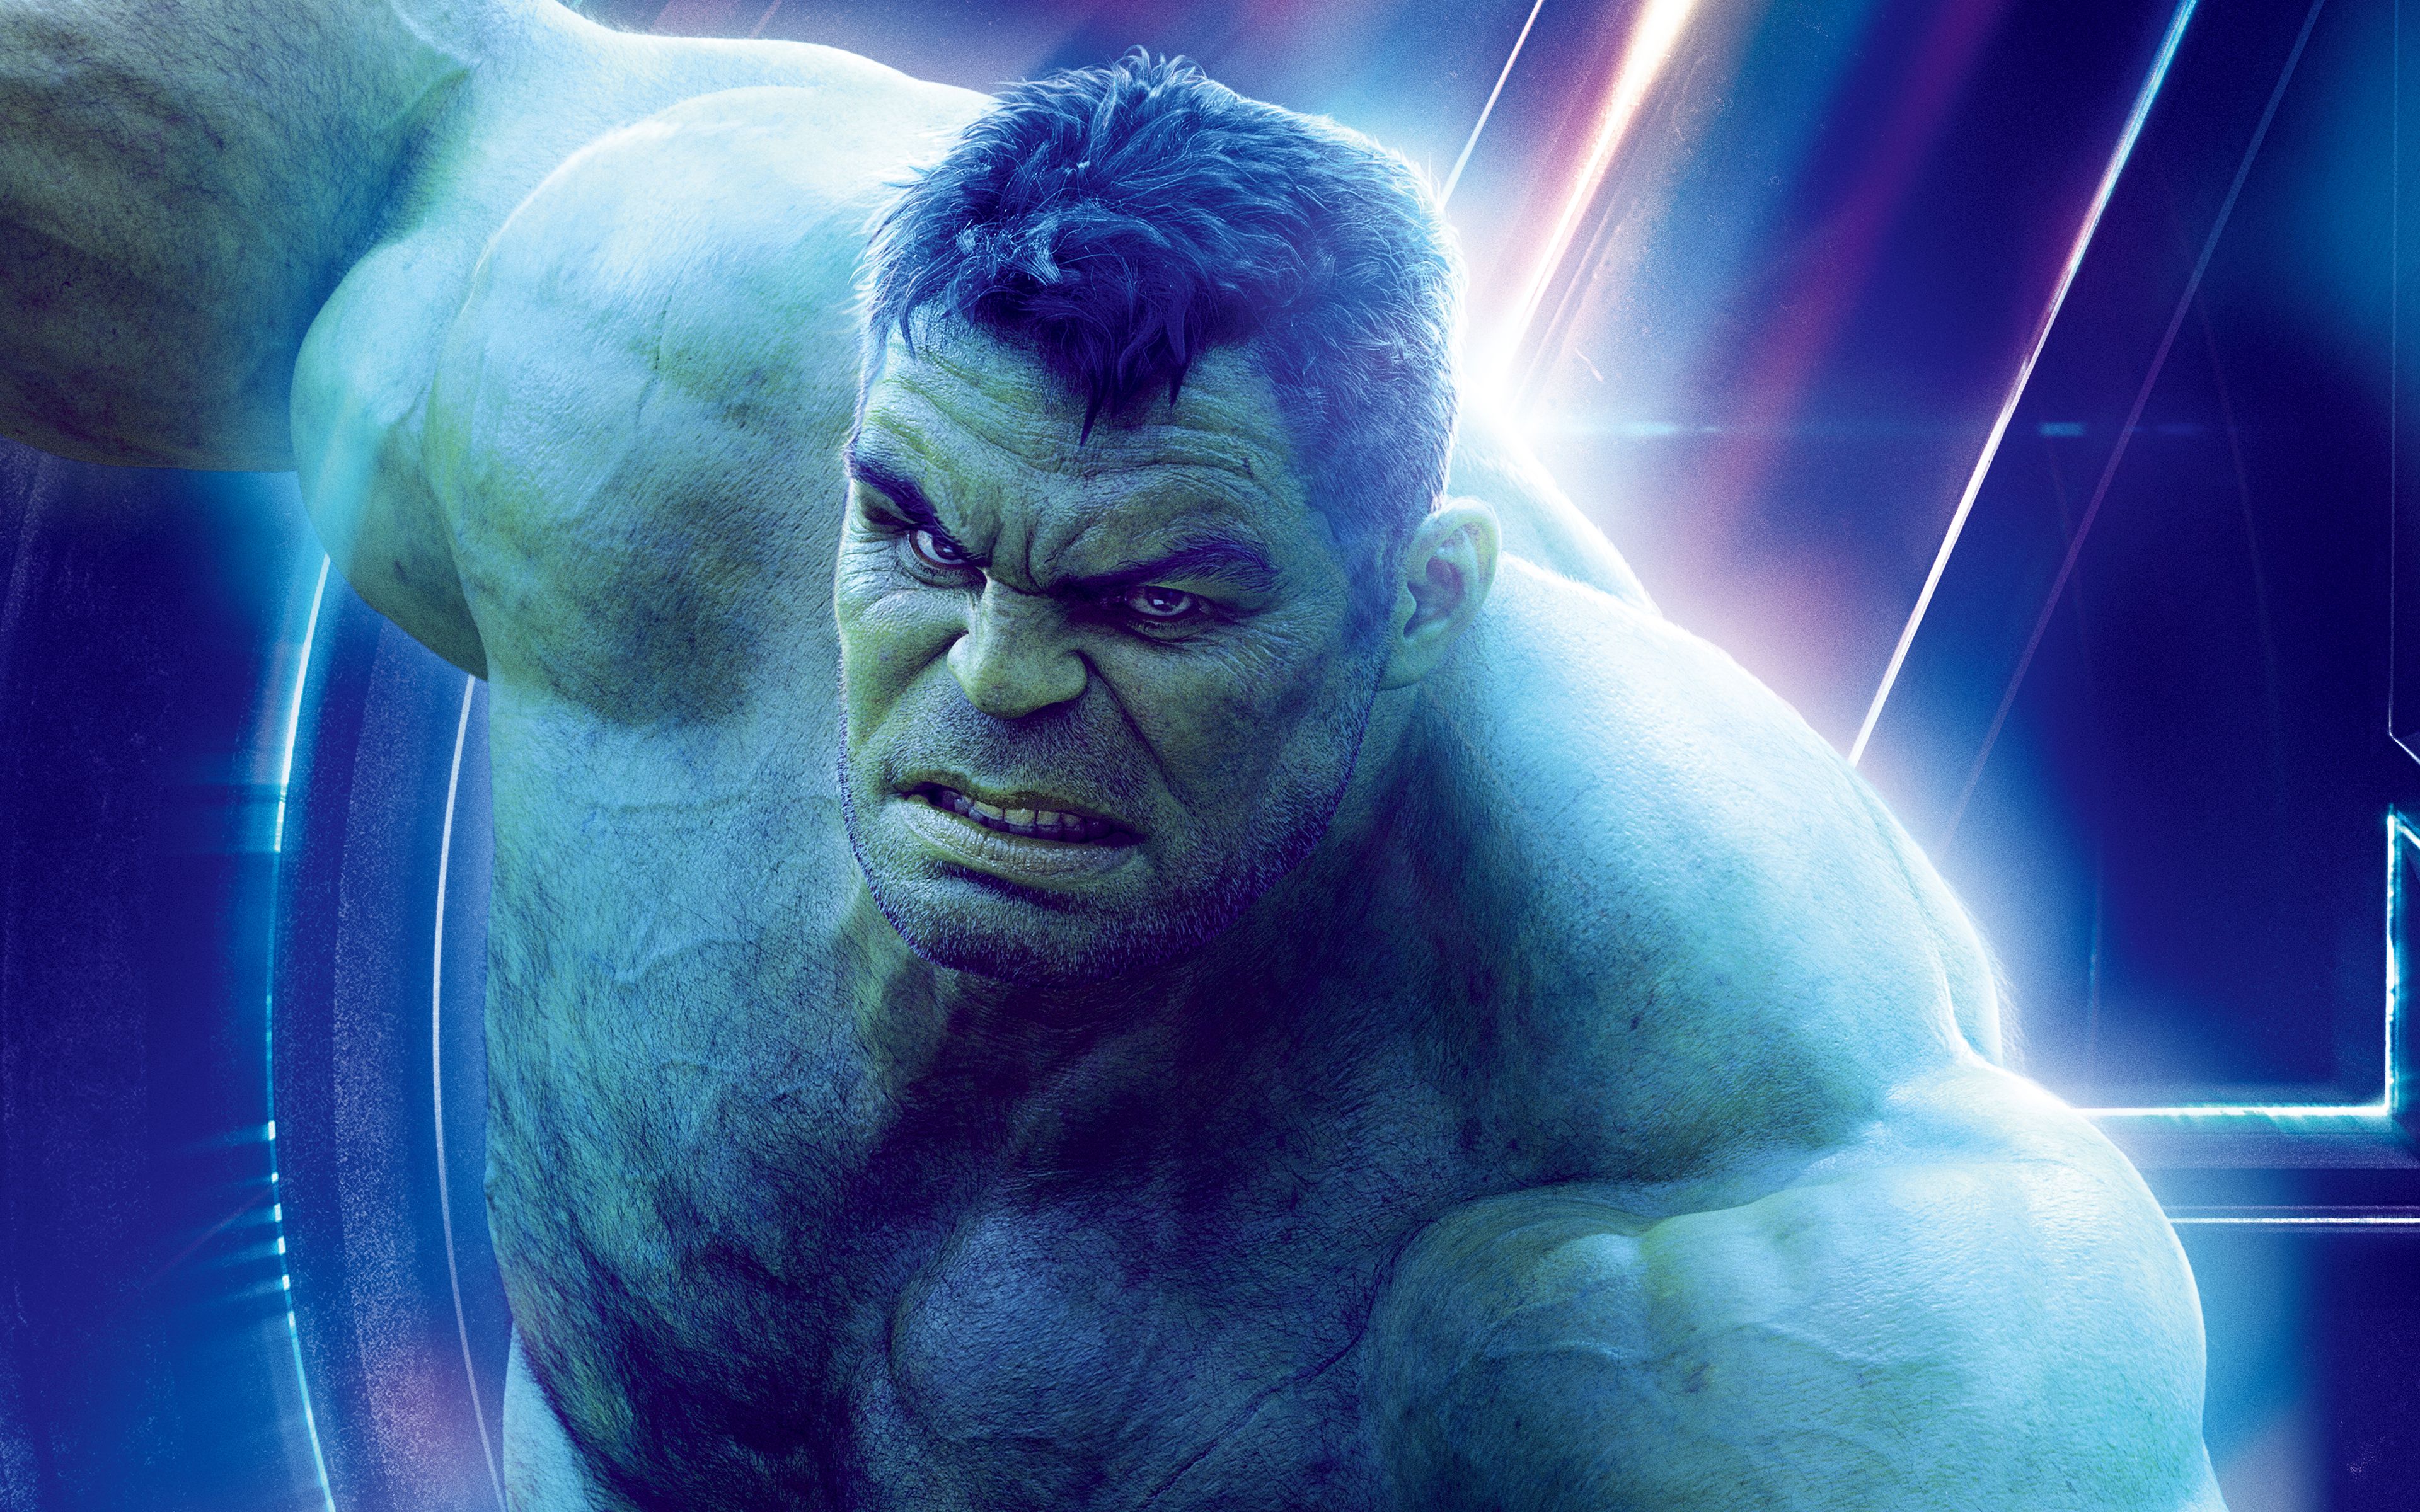 Hulk in Avengers Infinity War 4K 8K Wallpaper. HD Wallpaper